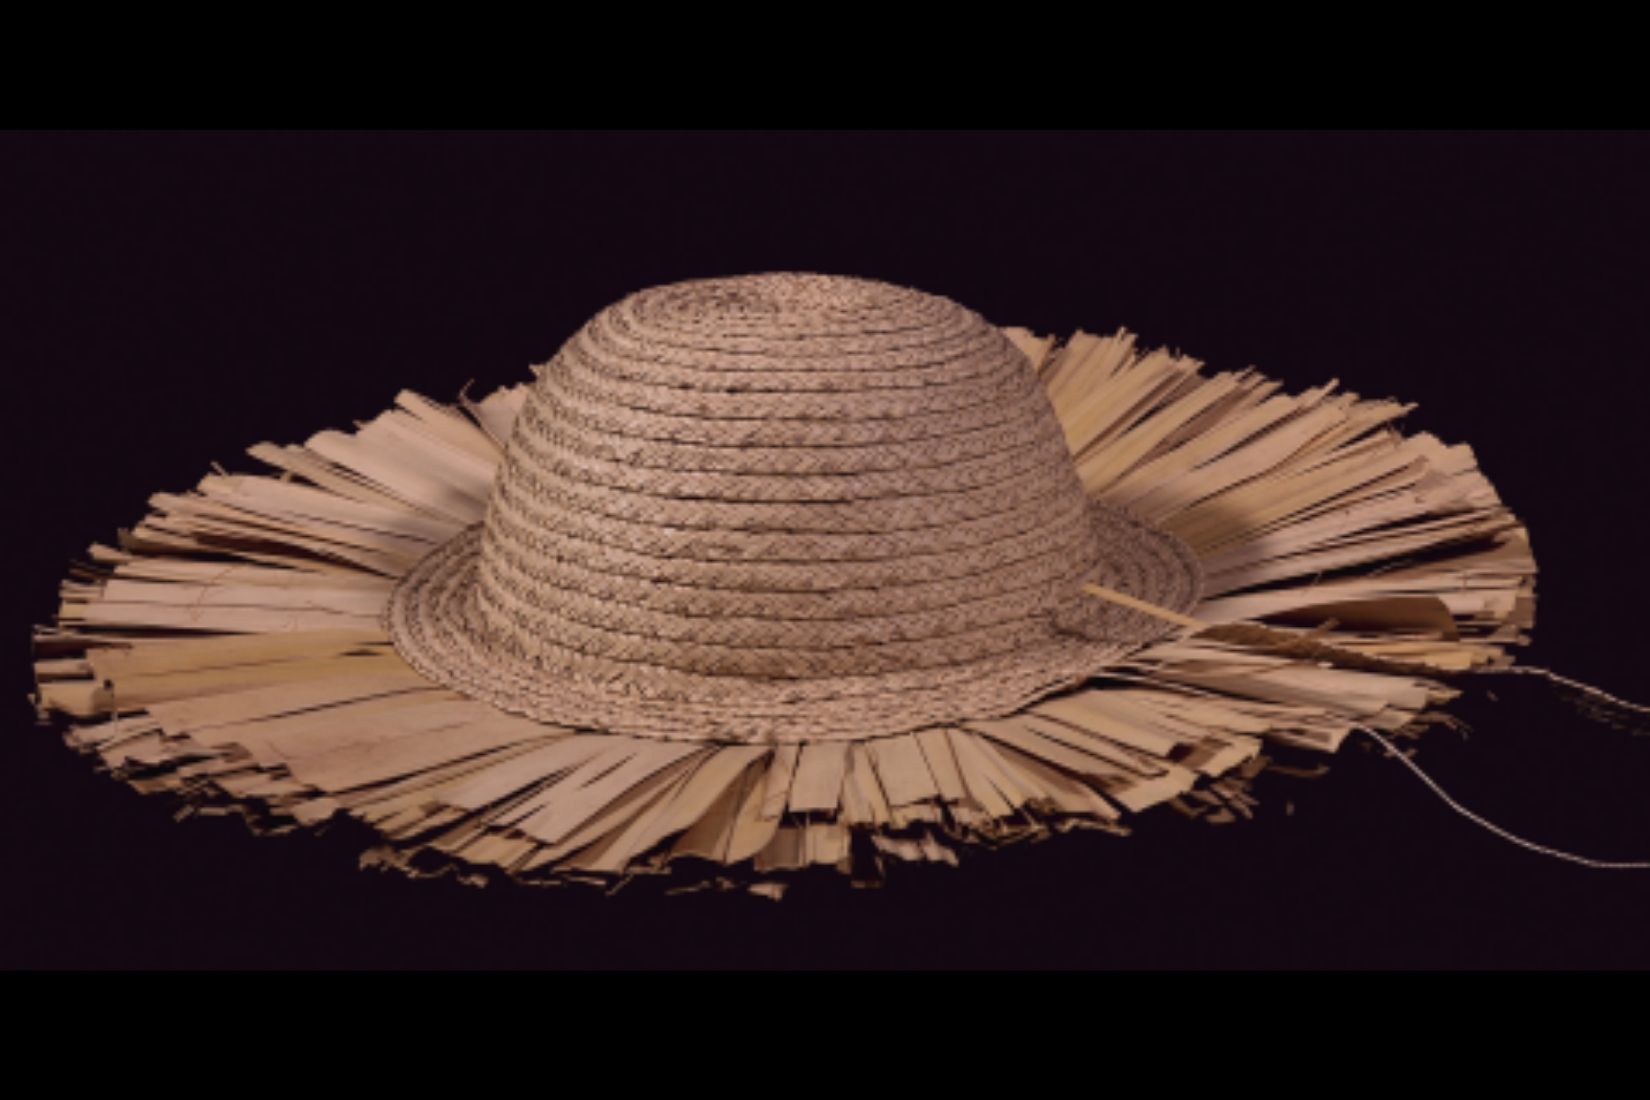 Proceso de elaboración de sombrero. Palma tejida. Artesano Juan José Aguilar. Villa de Álvarez, Col. 2016. Col. Museo Universitario de Artes Populares. (Foto: Jasso).